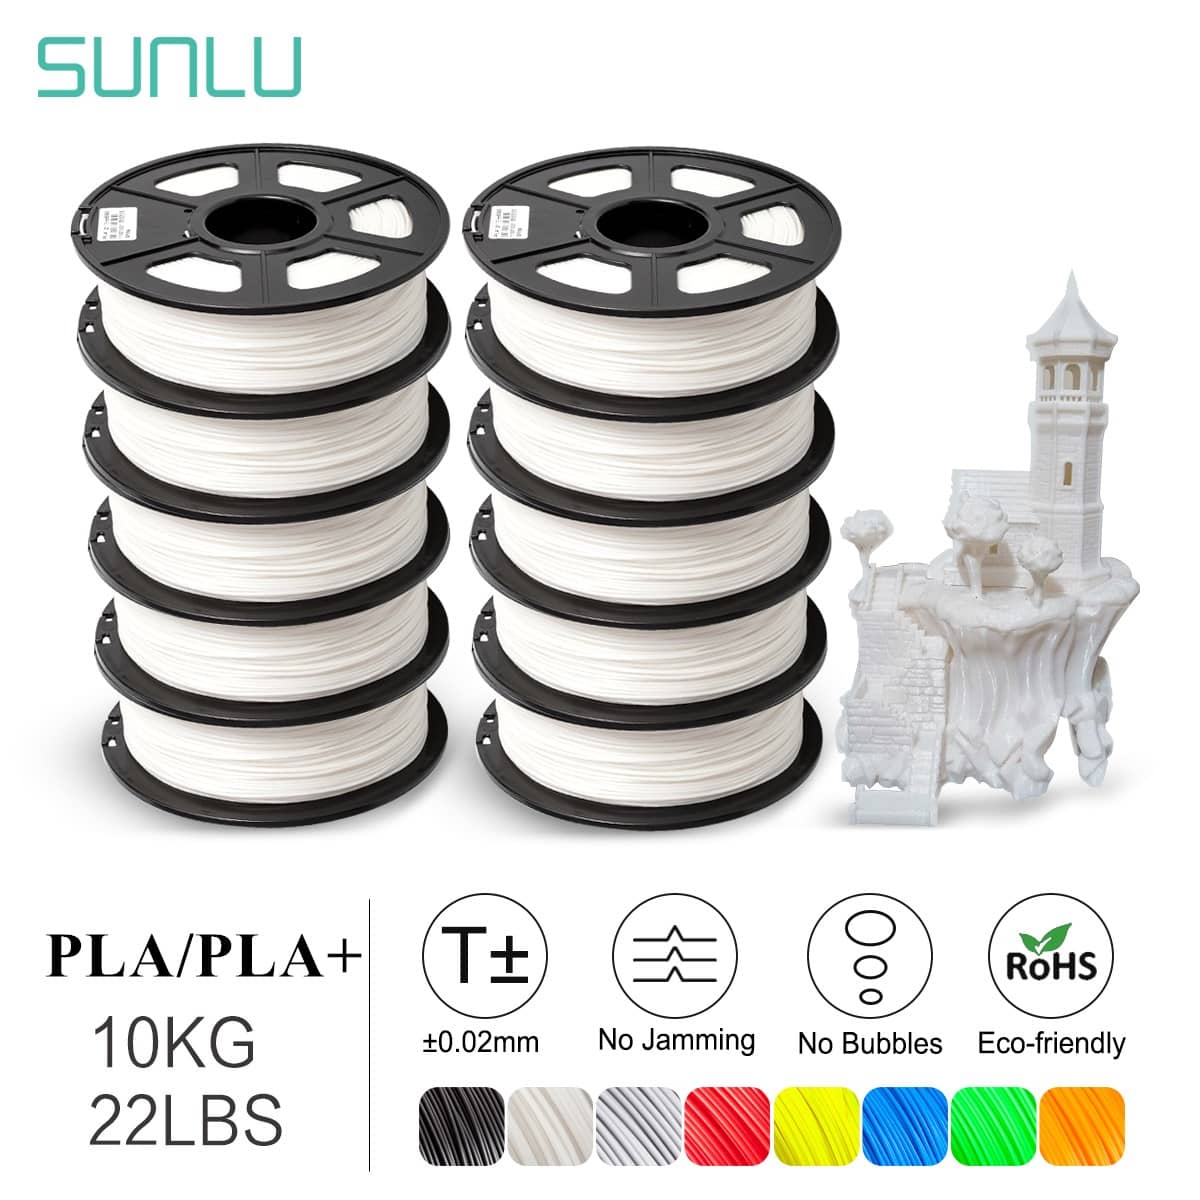 SUNLU PLA Filament 1.75mm 10KG 22LBS 1KG x 10 Colors PLA 3D Filament for 3D Printer & 3D Pens Tolerance Accuracy +/- 0.02 mm 